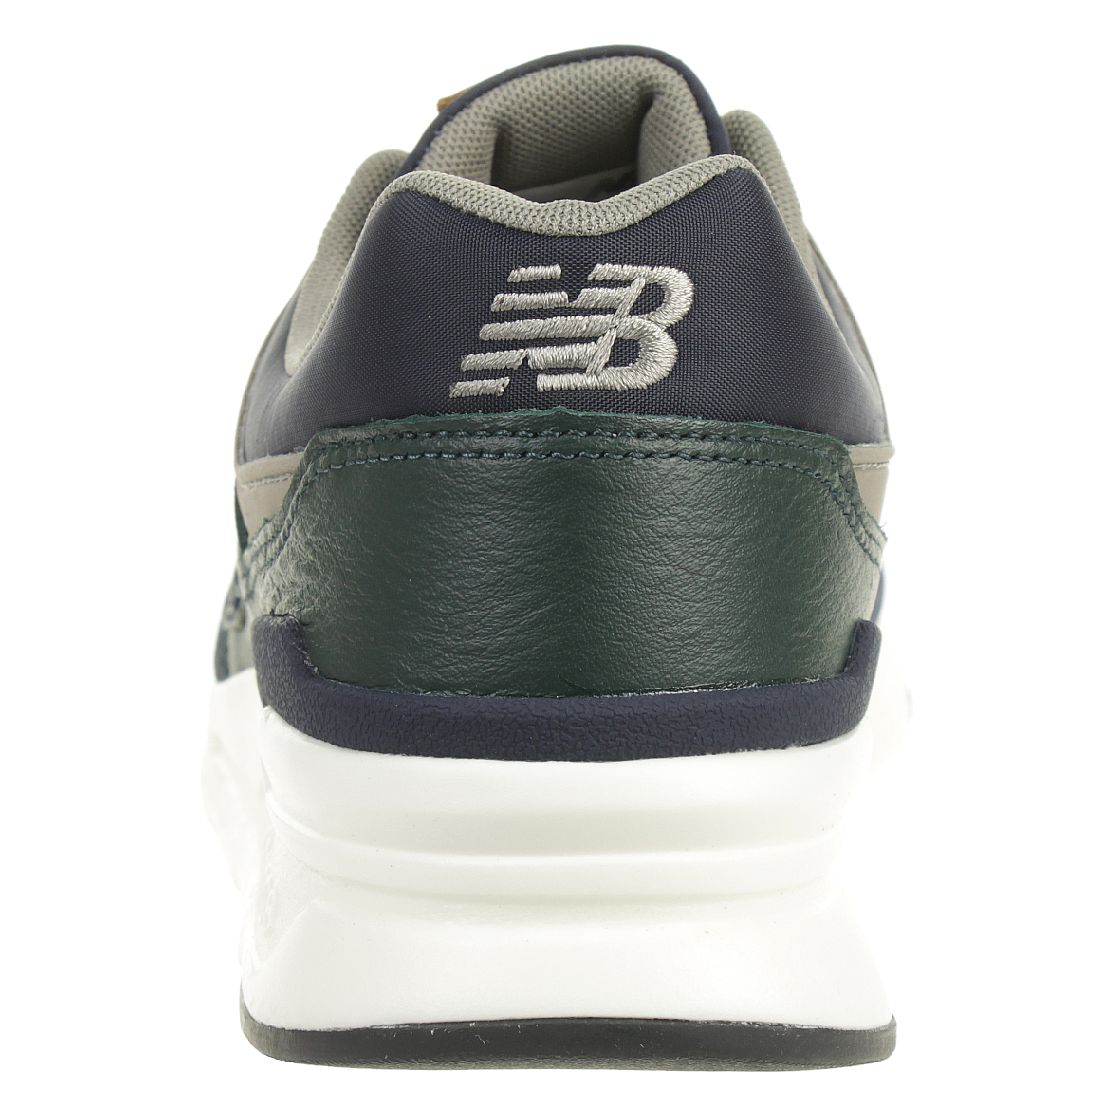 New Balance CM997 HXB Sneaker Herren Schuhe Blau/Grün